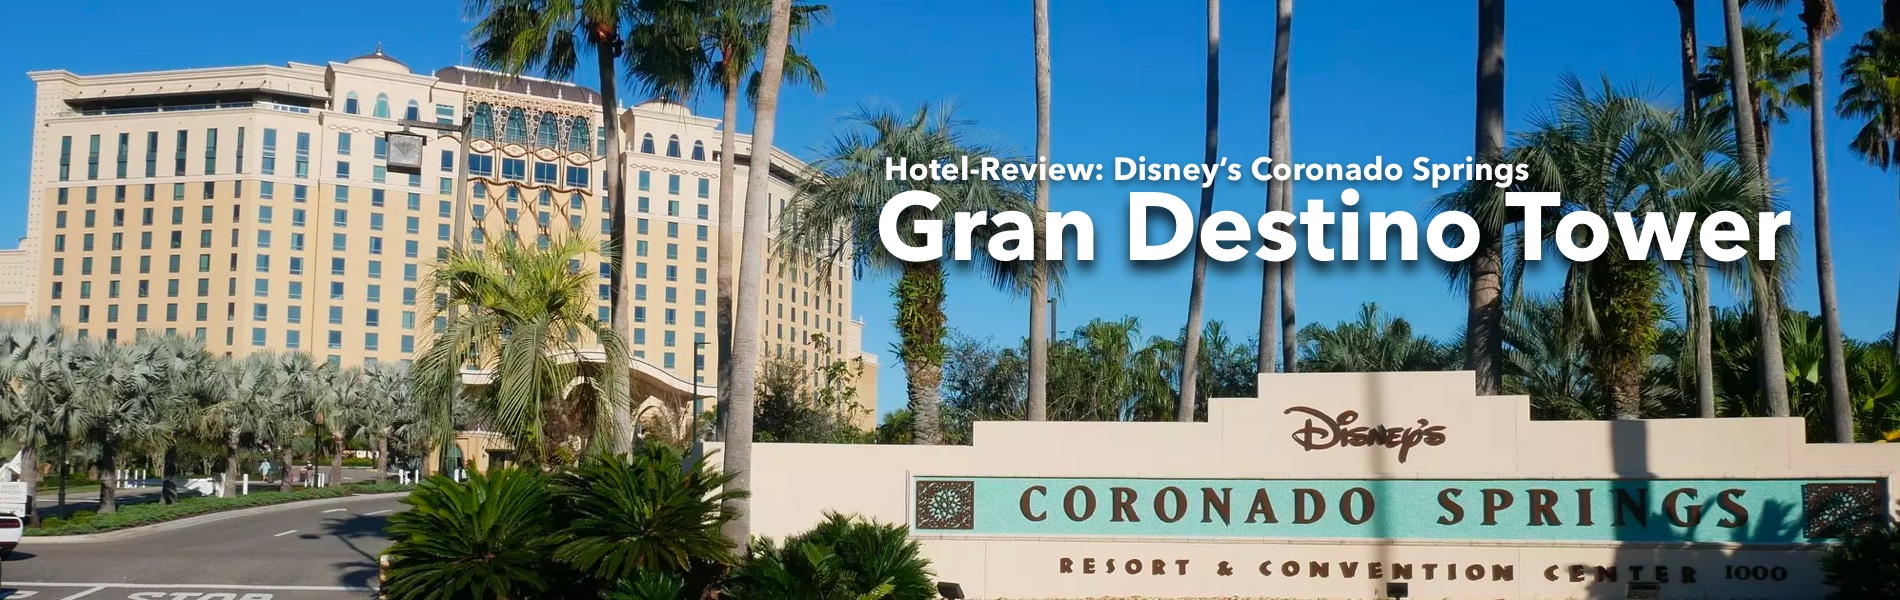 Teaser Disney's Coronado Springs - Gran Destino Tower